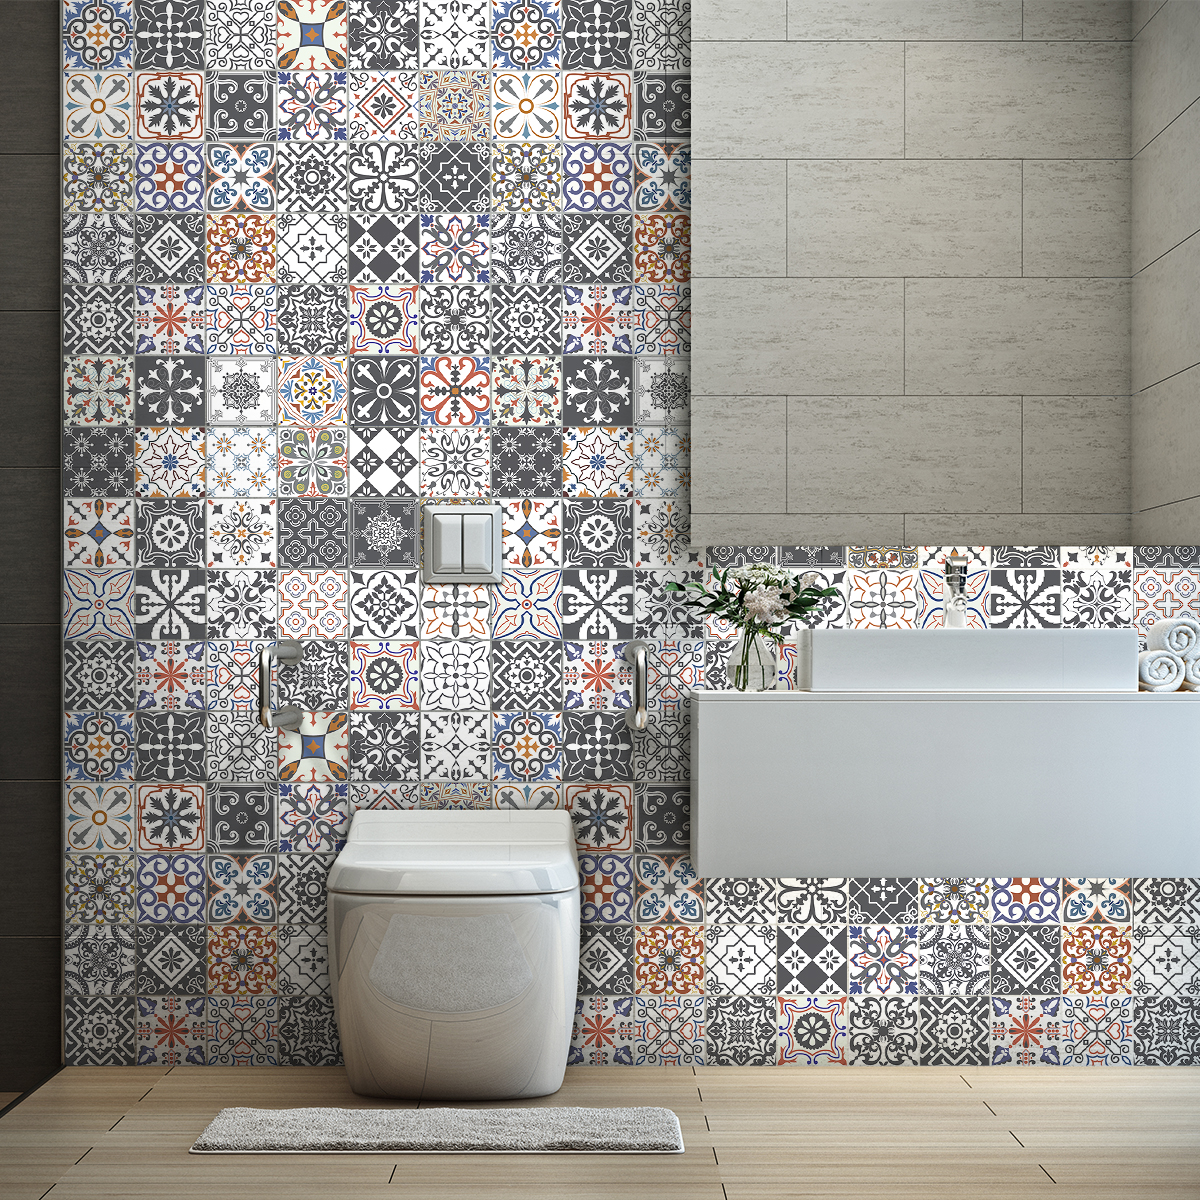 60 muurstickers cement tegels azulejos thazia